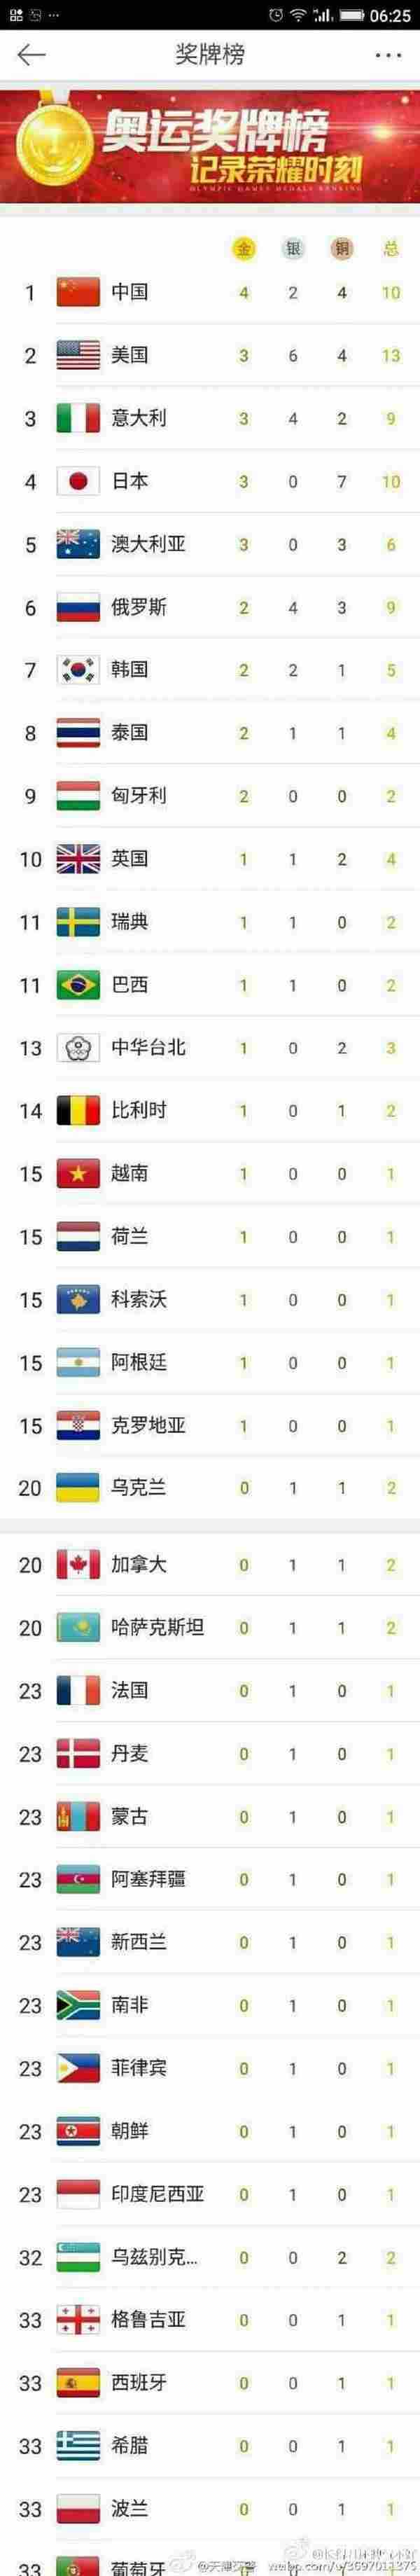 2016年里约奥运奖牌榜排名 中国4金2银4铜位居榜首